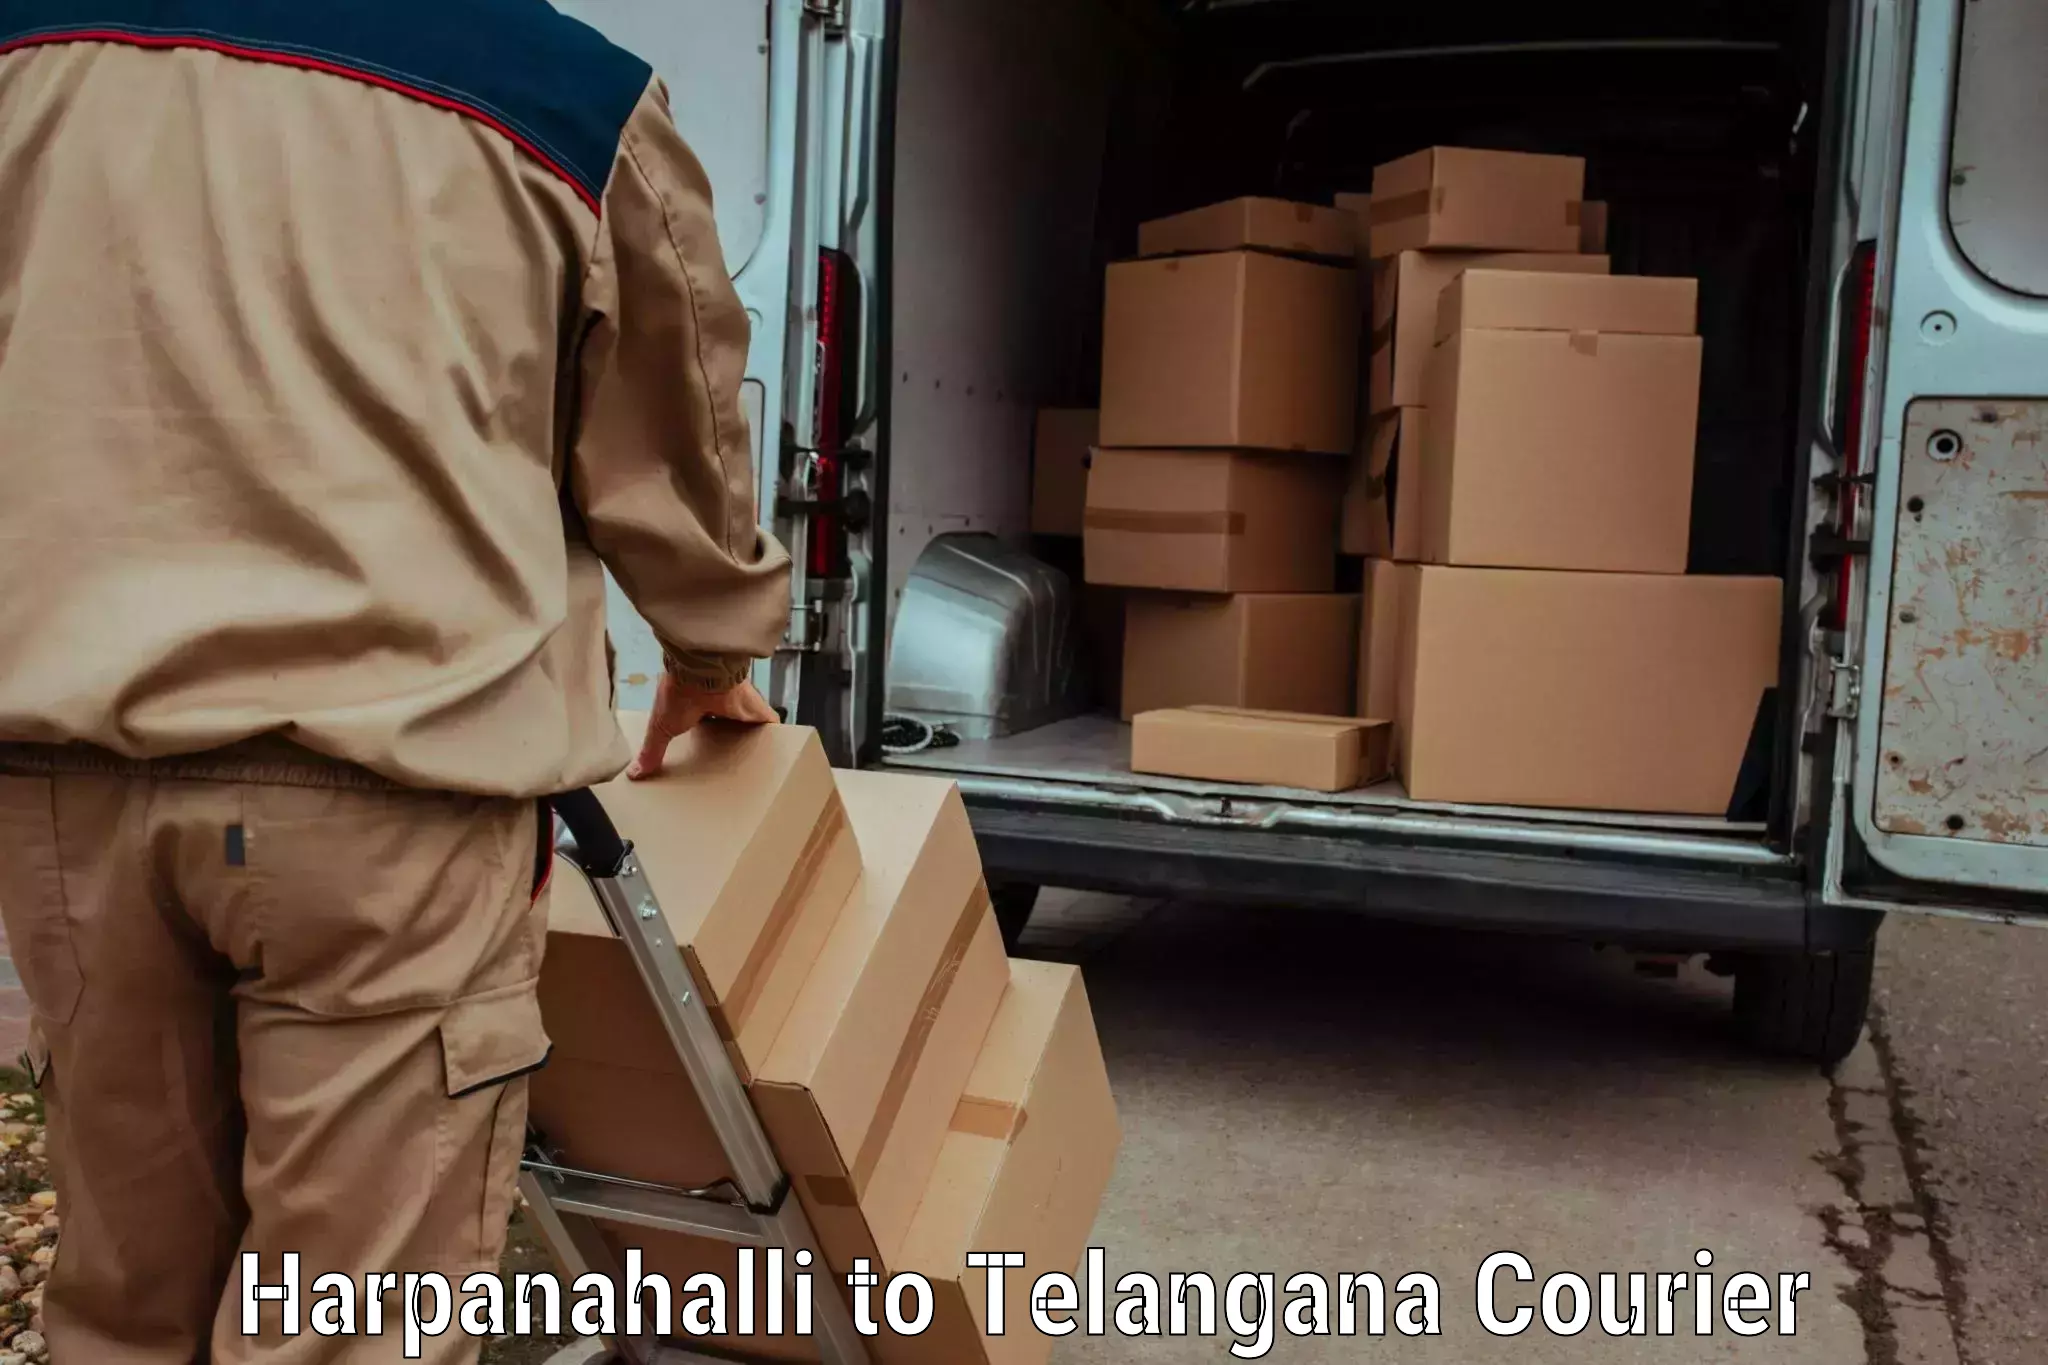 Express postal services Harpanahalli to Banswada